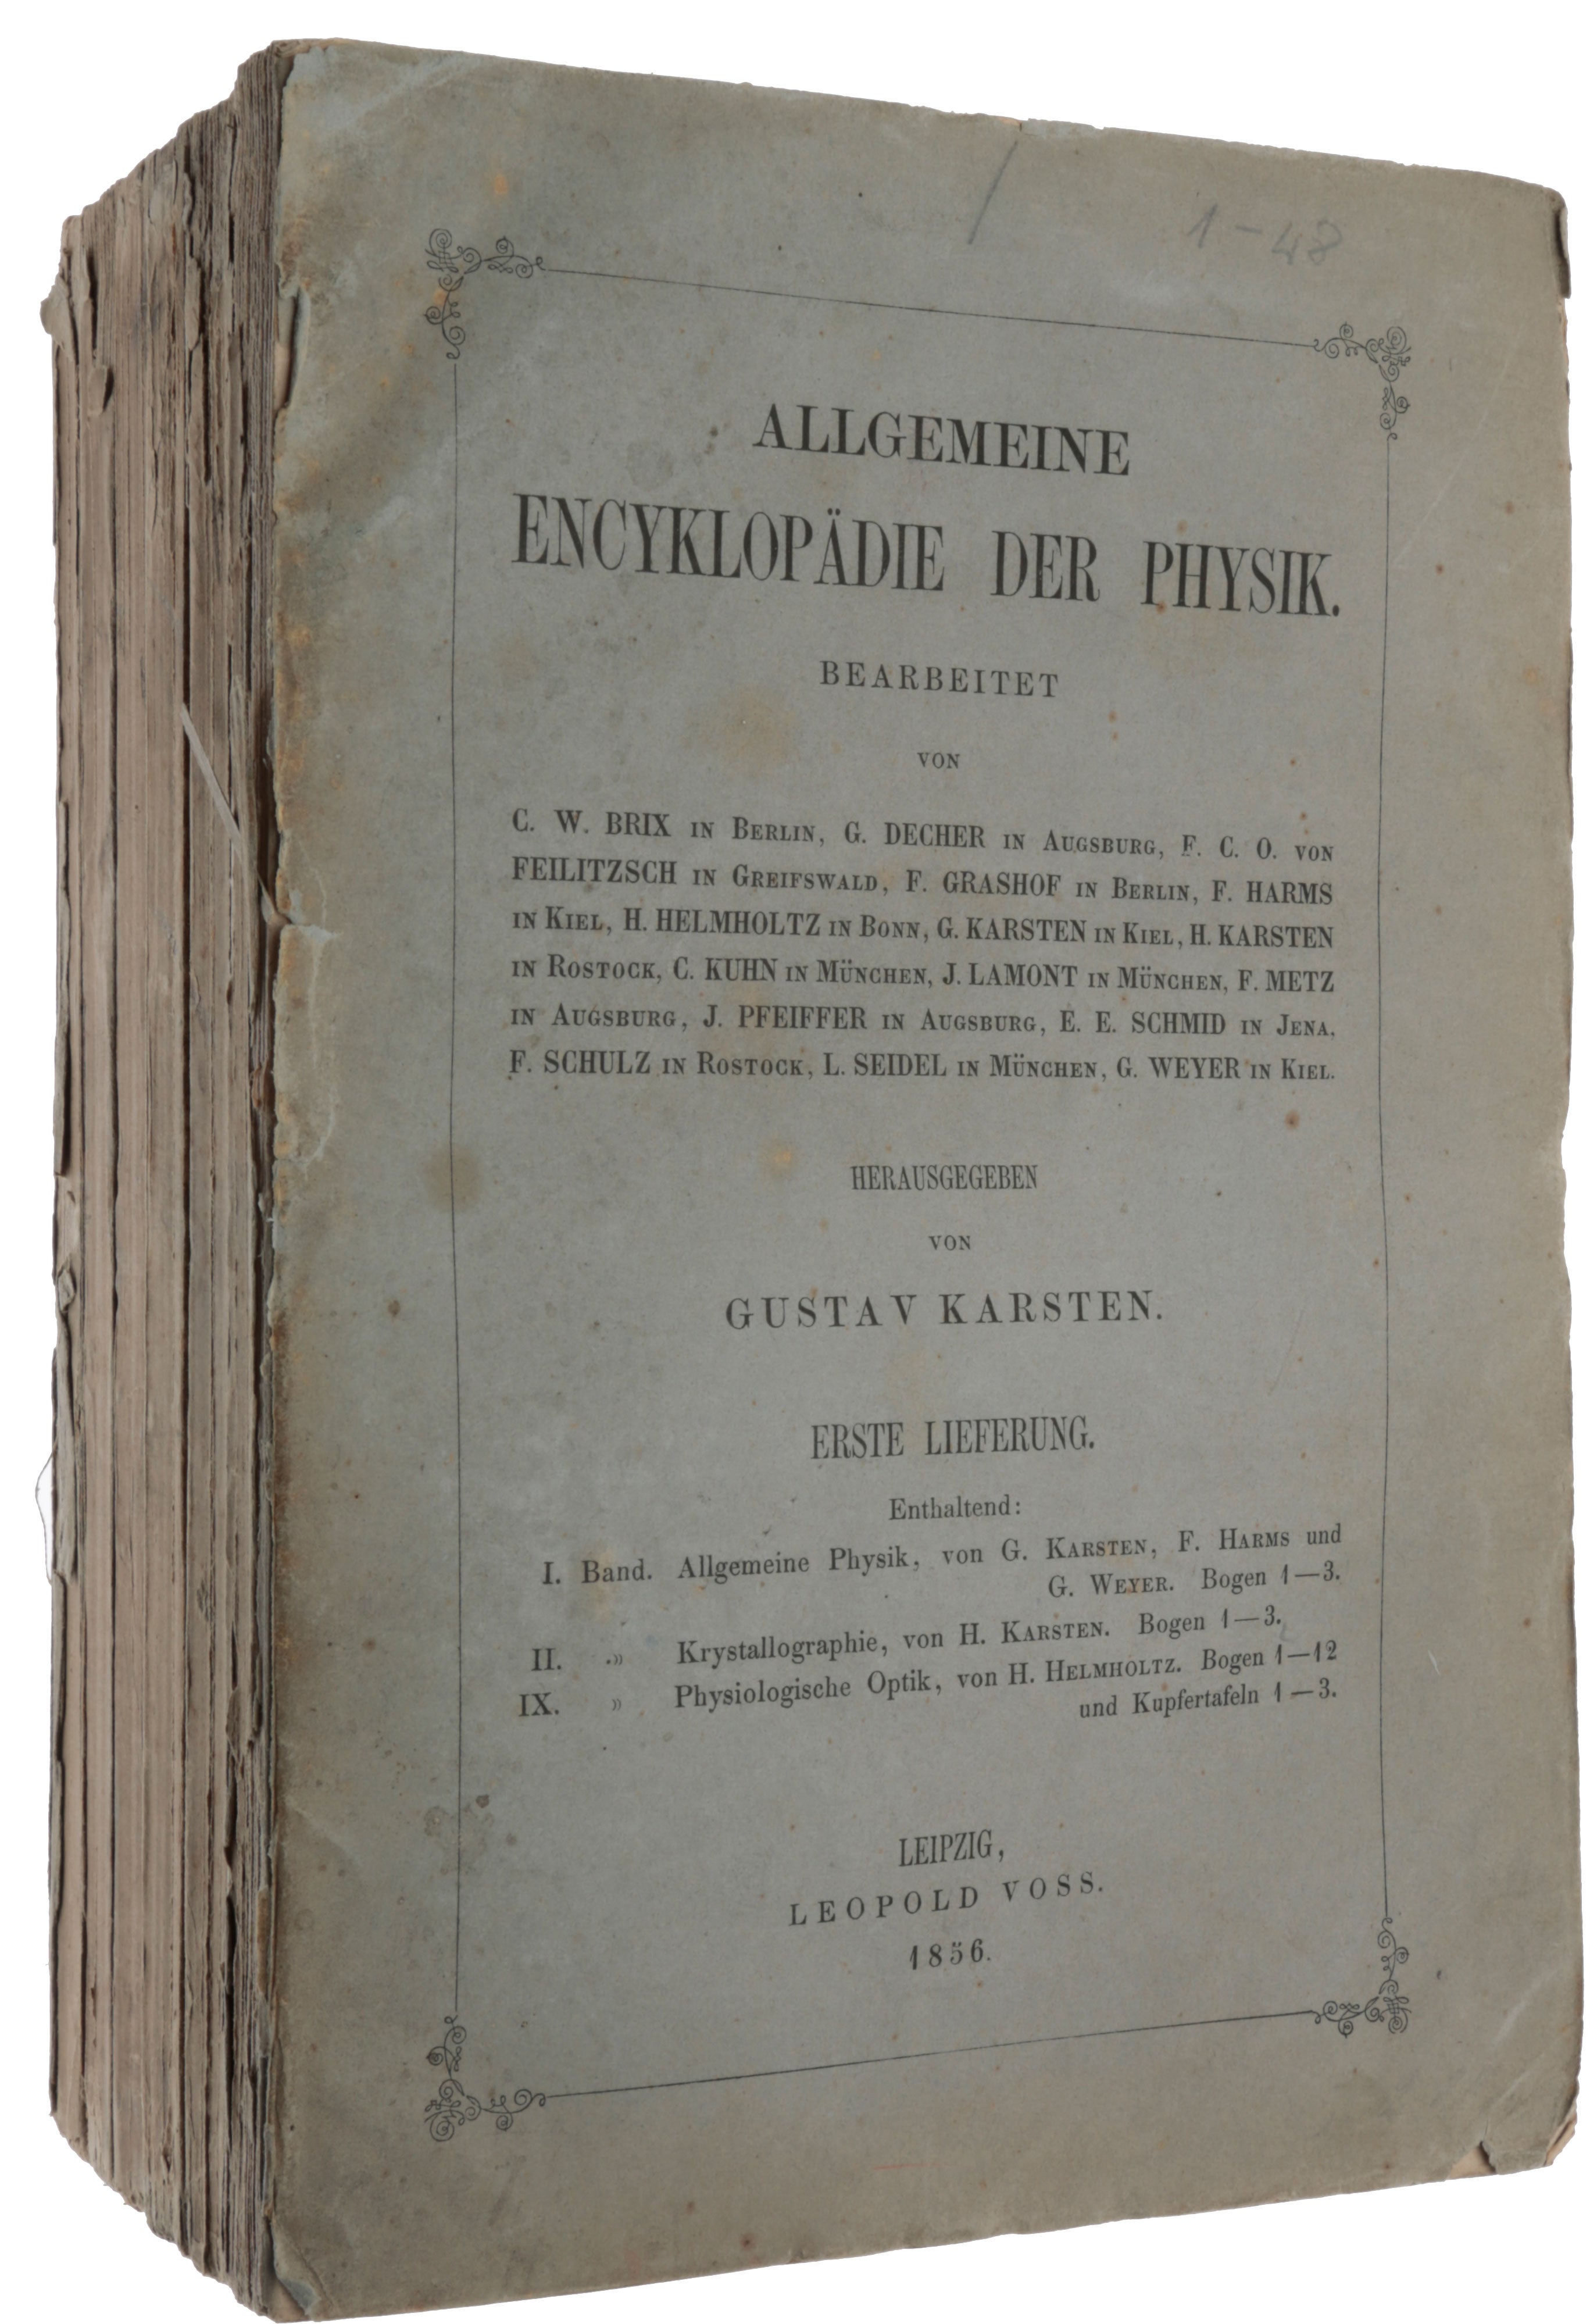 Item #5275 Handbuch der physiologischen Optik. Contained in: Allgemeine Encyklopädie der Physik, Bd. IX, Lieferungen 1, 7, 8, 17, 18, 19. Hermann HELMHOLTZ.